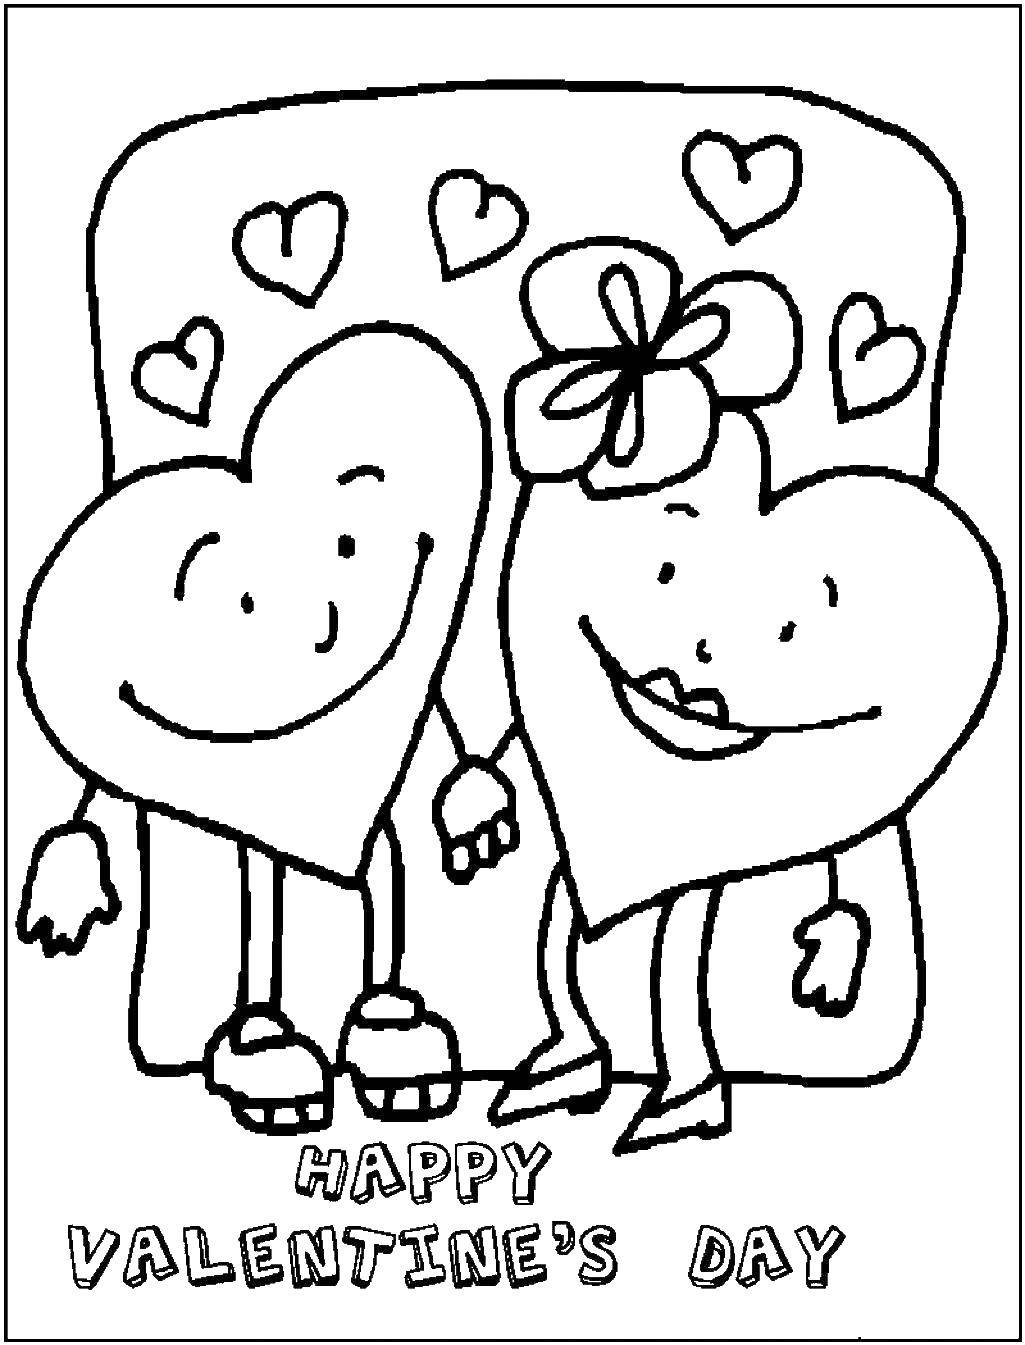 Опис: розмальовки  Щасливого дня закоханих. Категорія: листівки. Теги:  Листівка, привітання.